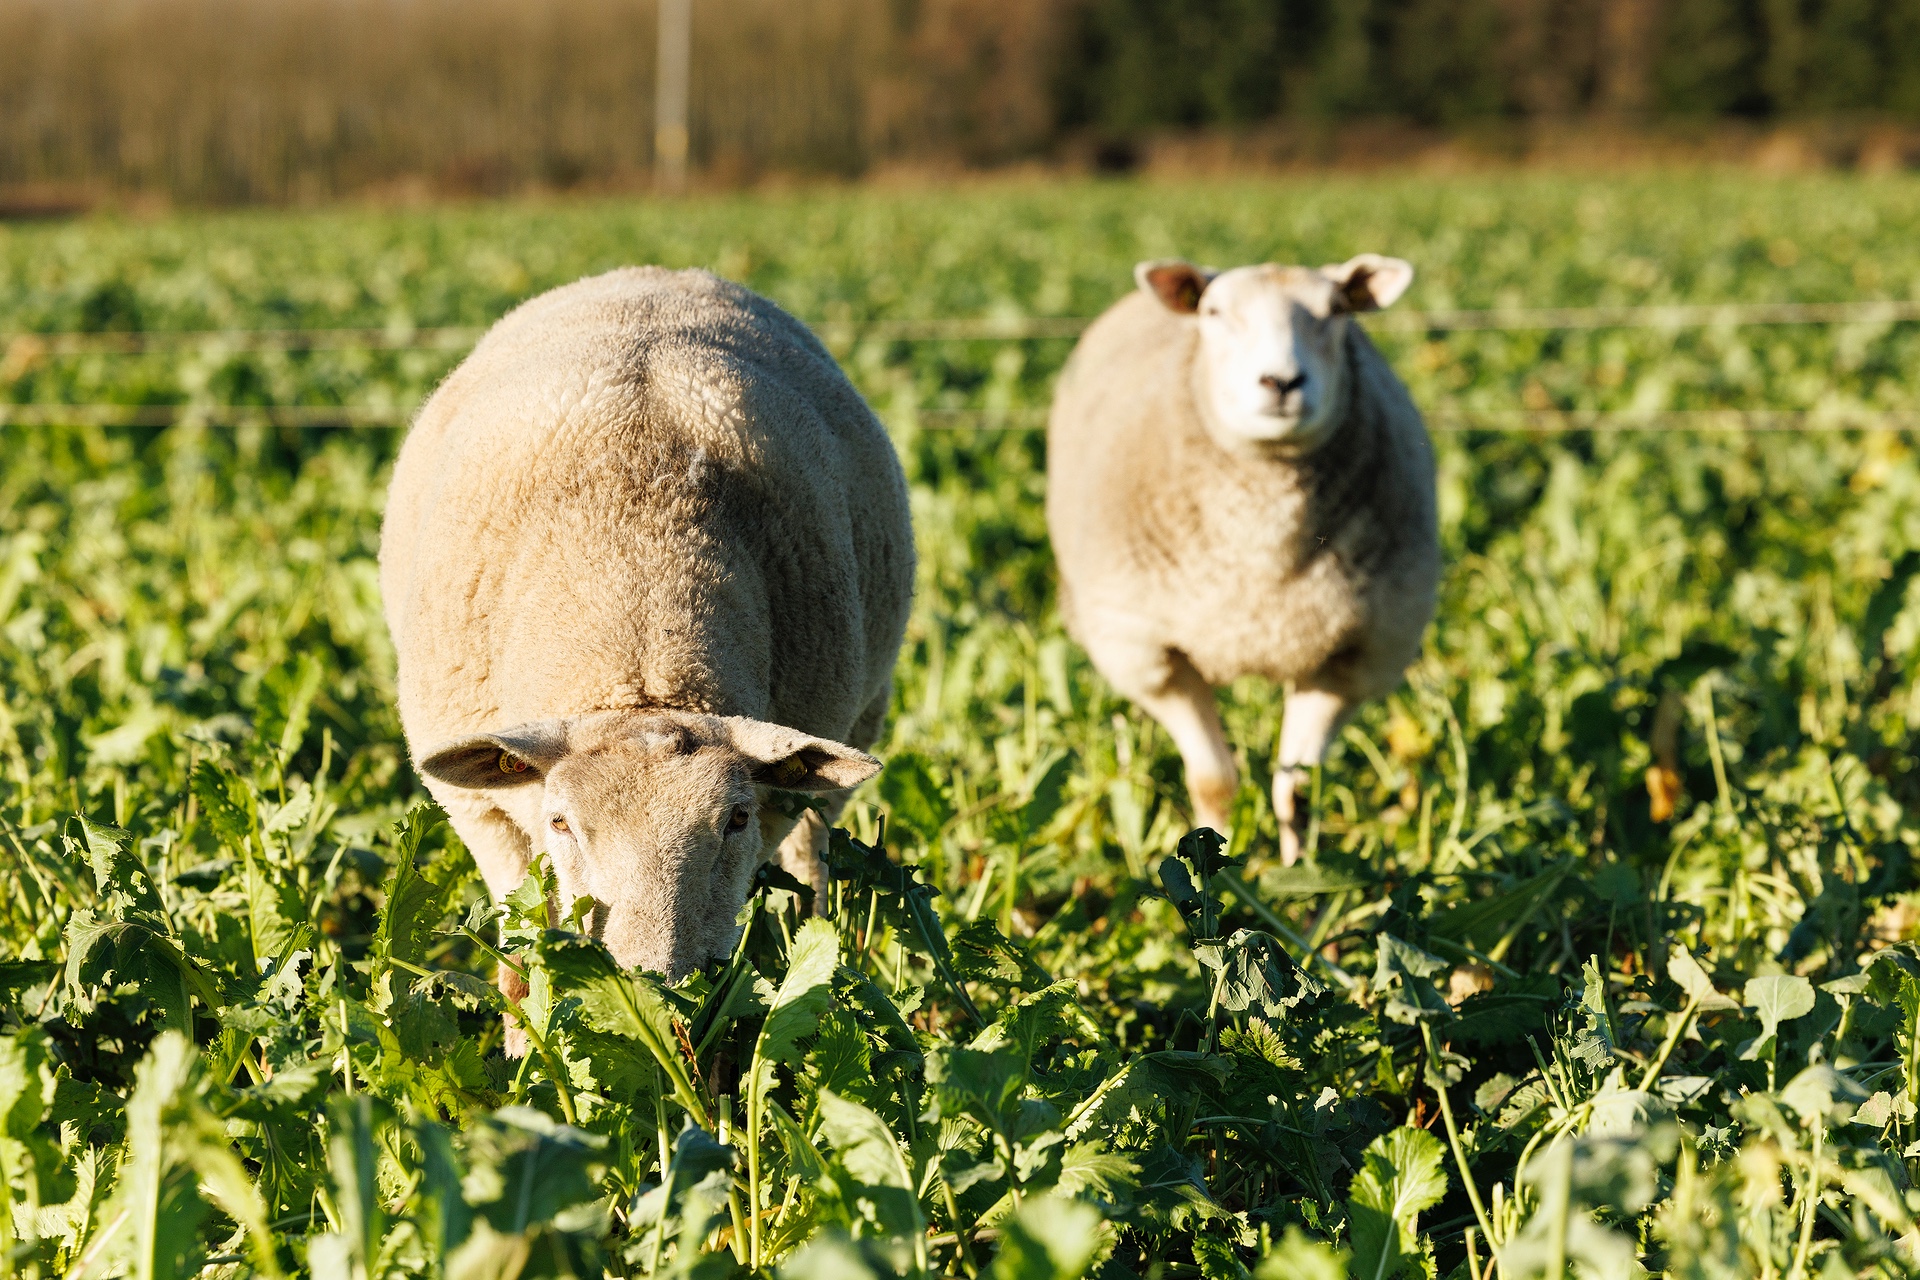 Sheep grazing catch crops in a field